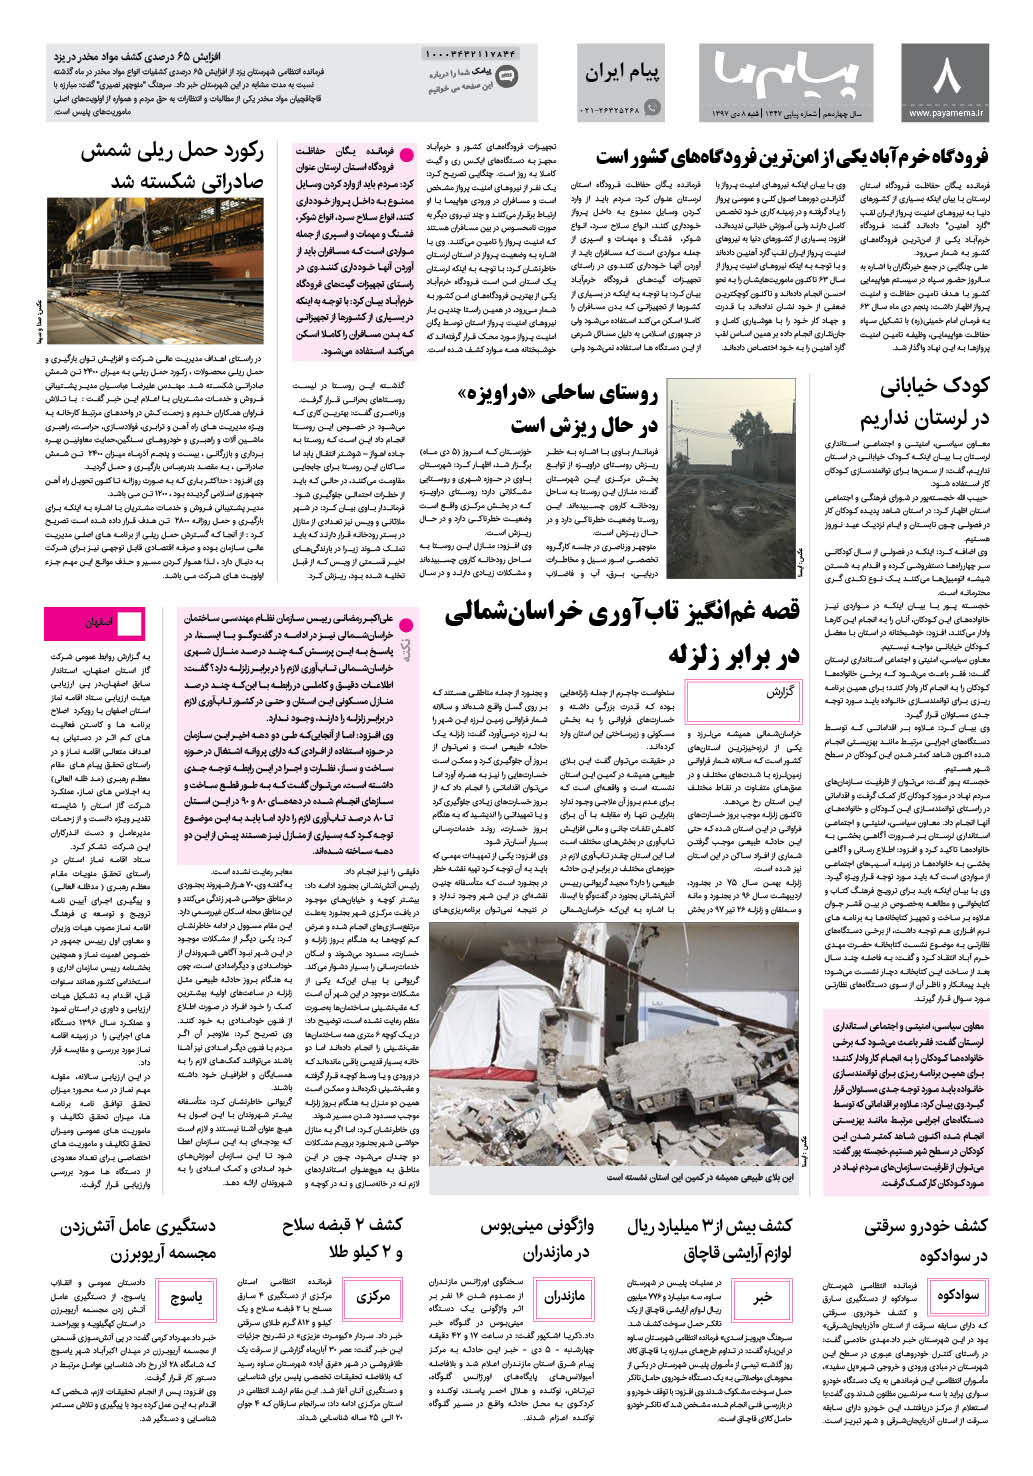 صفحه پیام ایران شماره 1347 روزنامه پیام ما